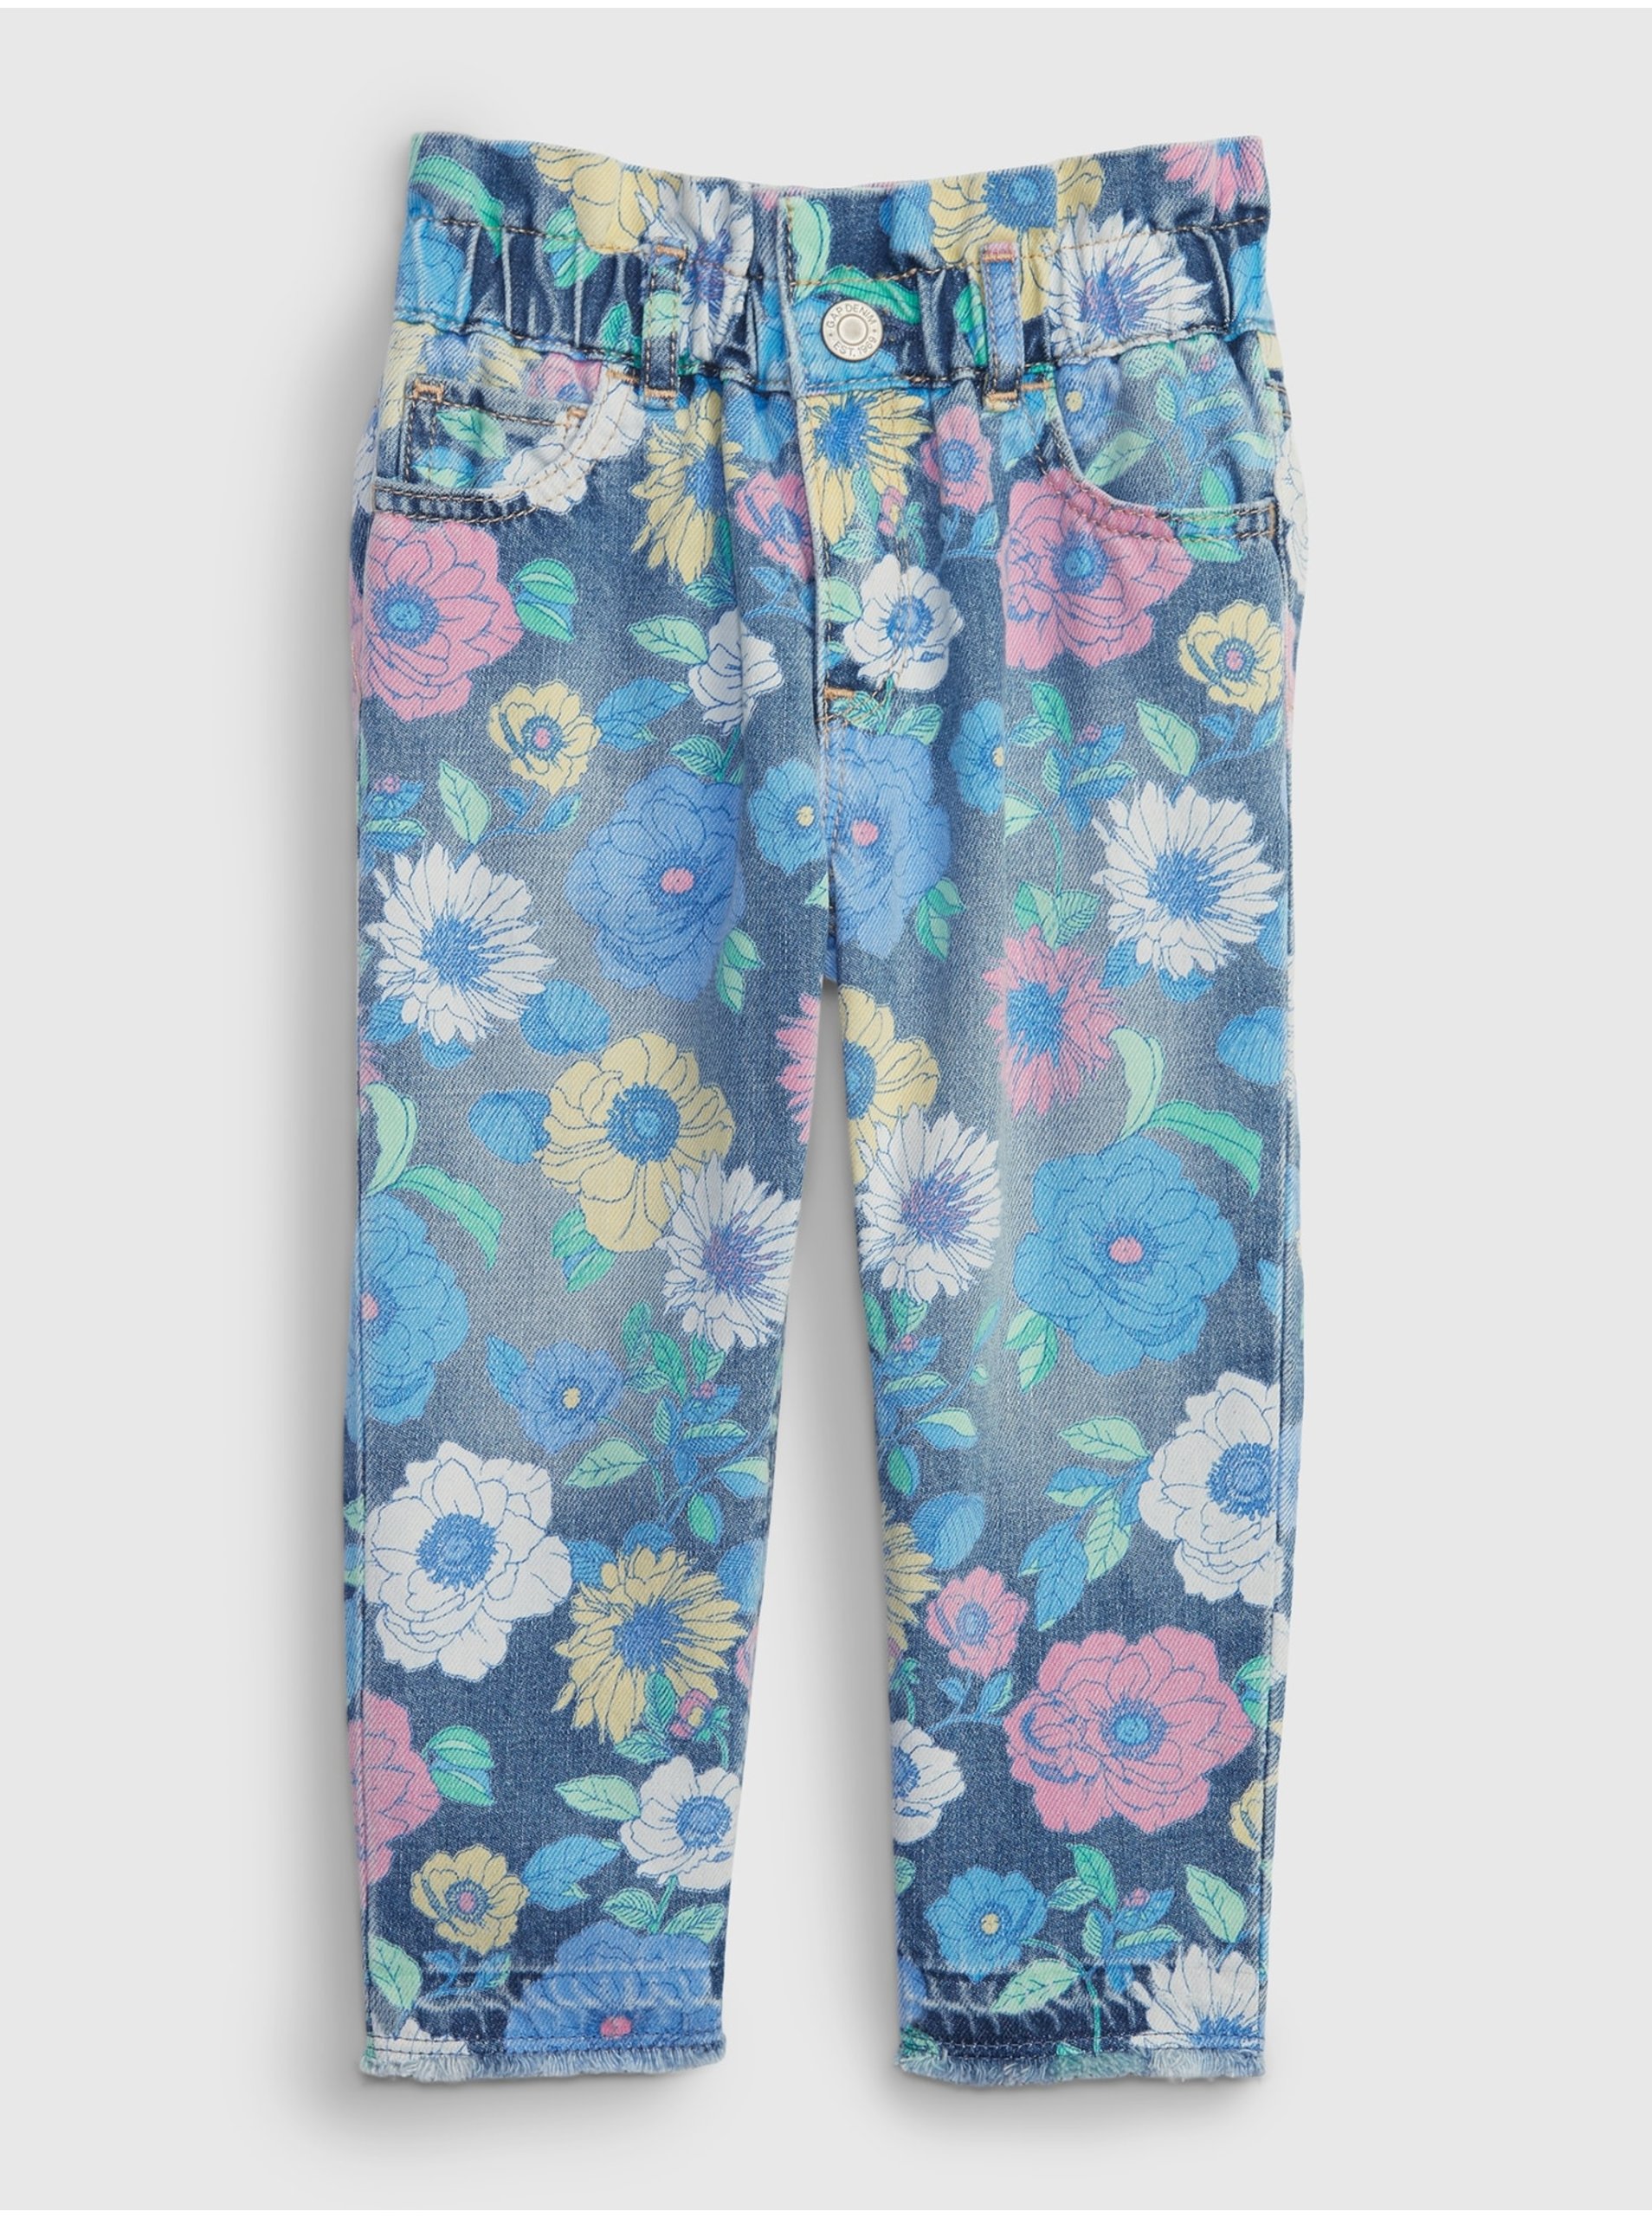 E-shop Modré holčičí květované mom džíny floral GAP floral